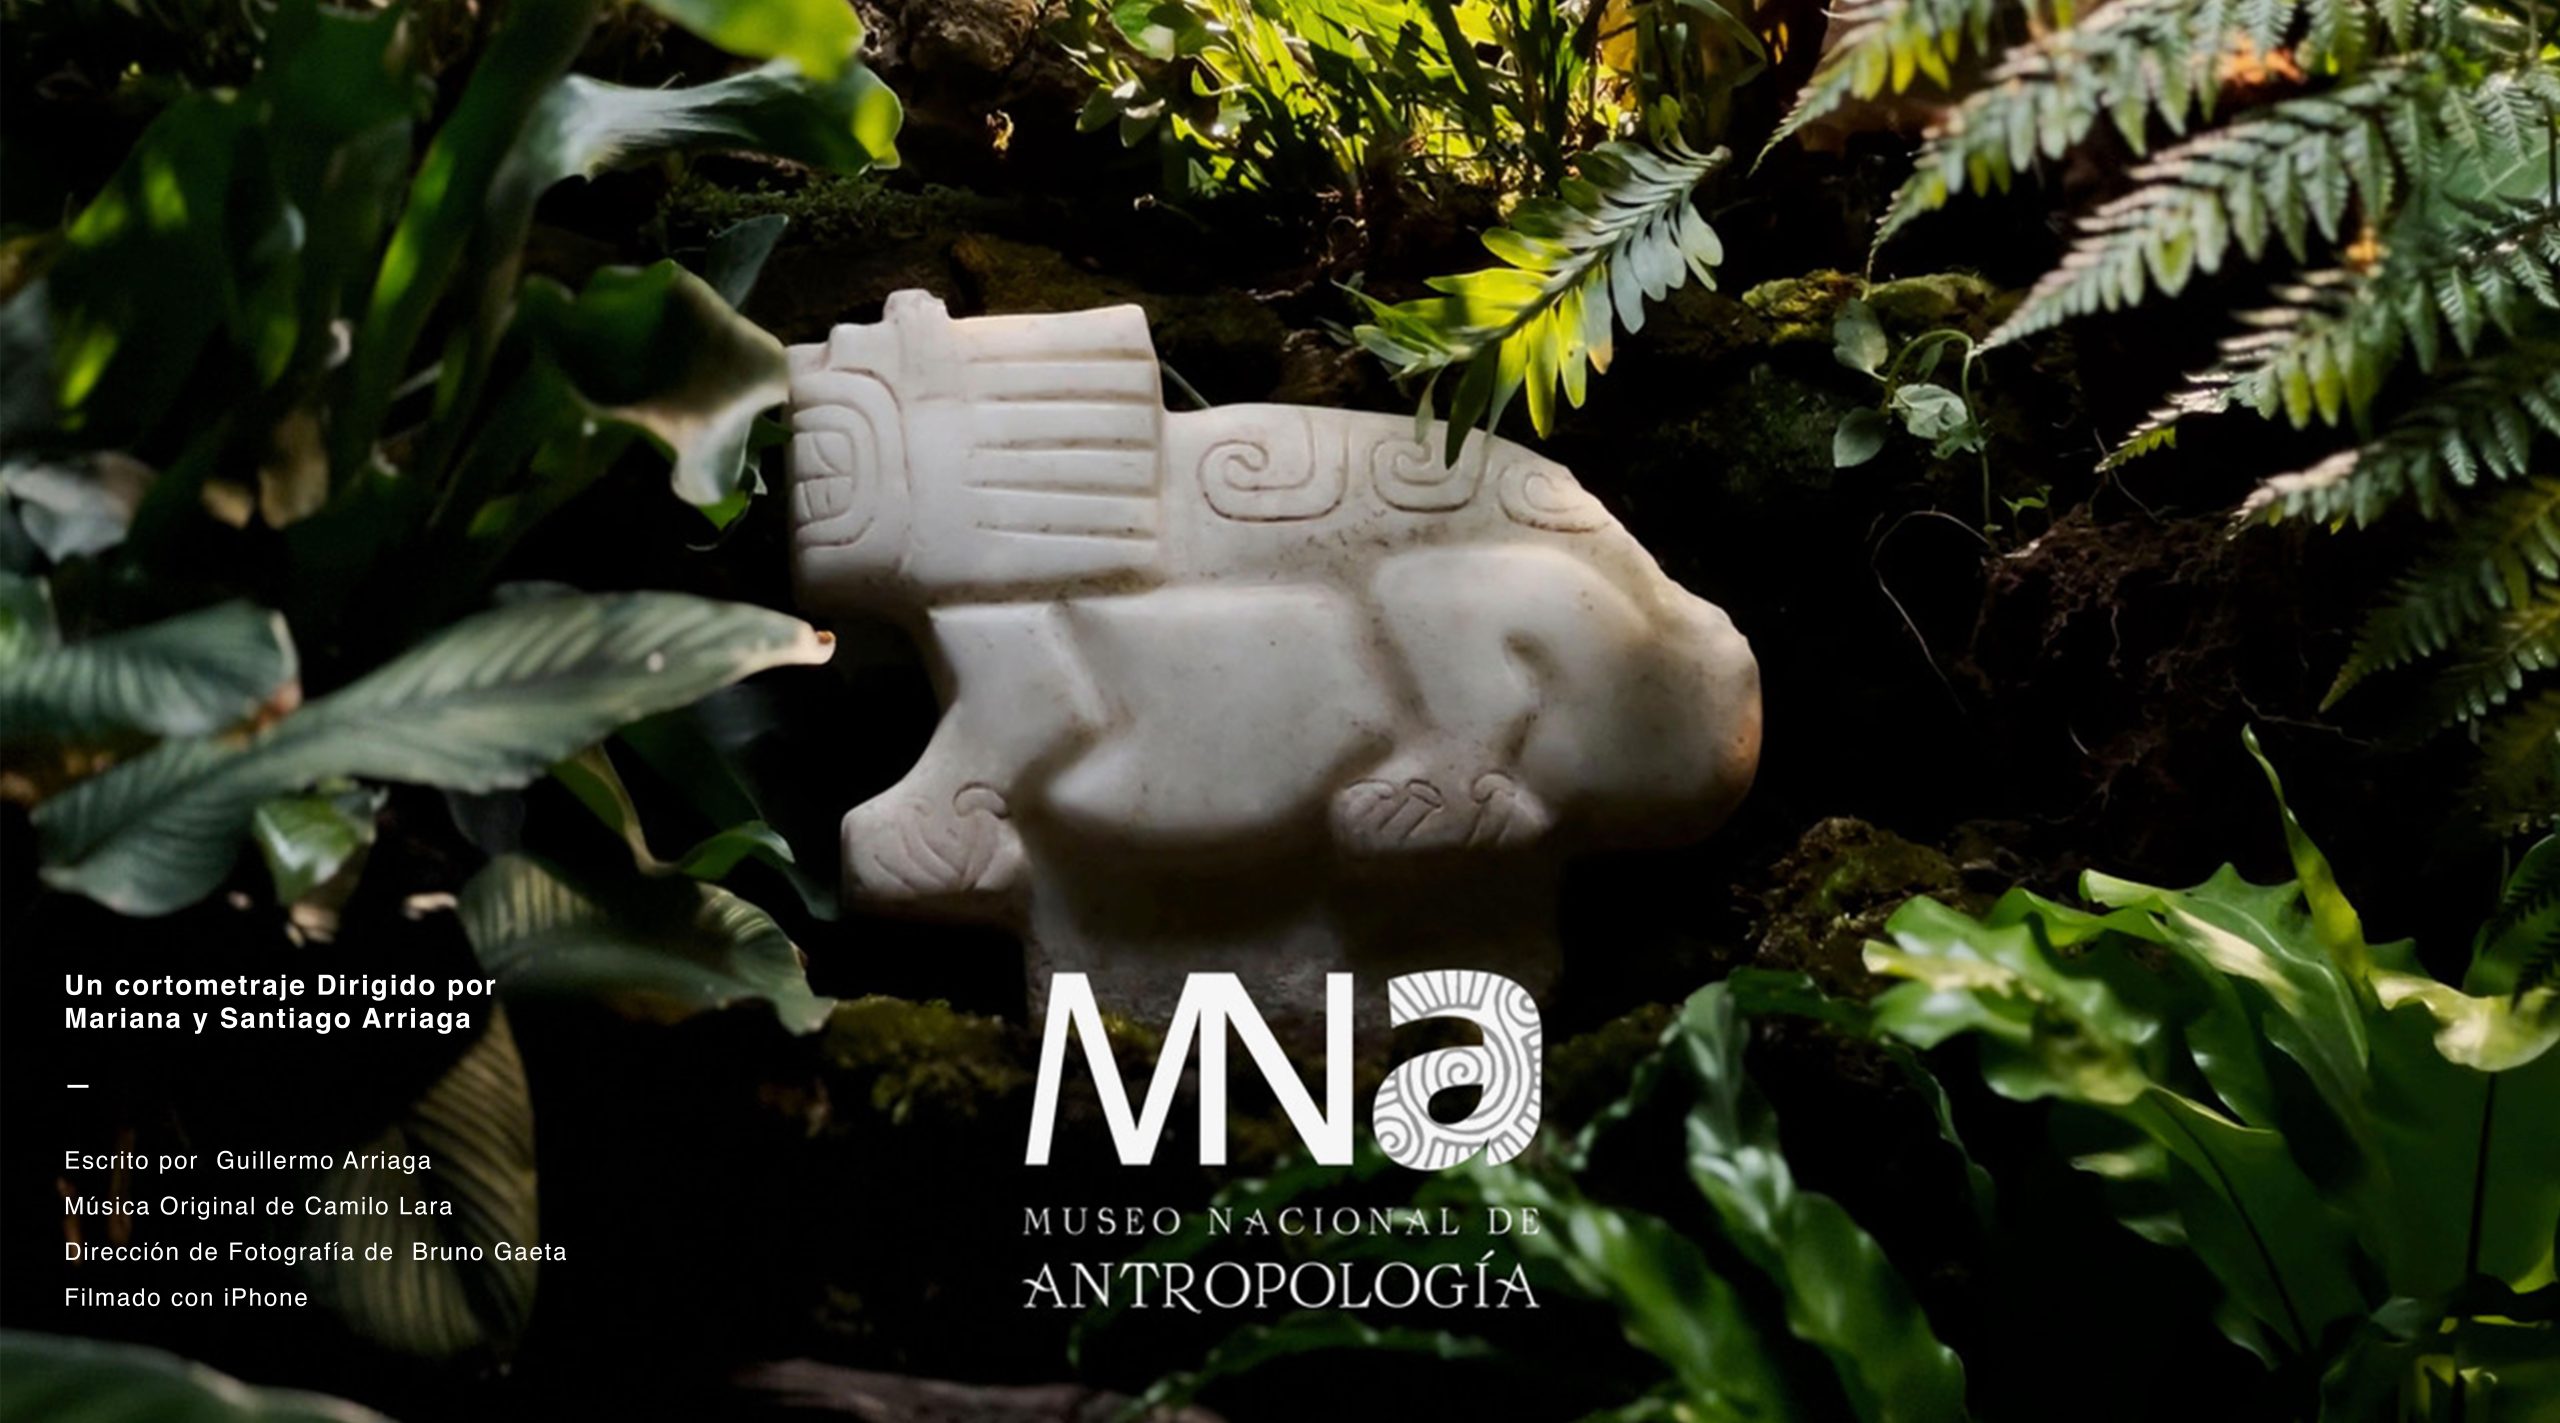 Animales Sagrados: Un cortometraje que enaltece al Museo Nacional de Antropología